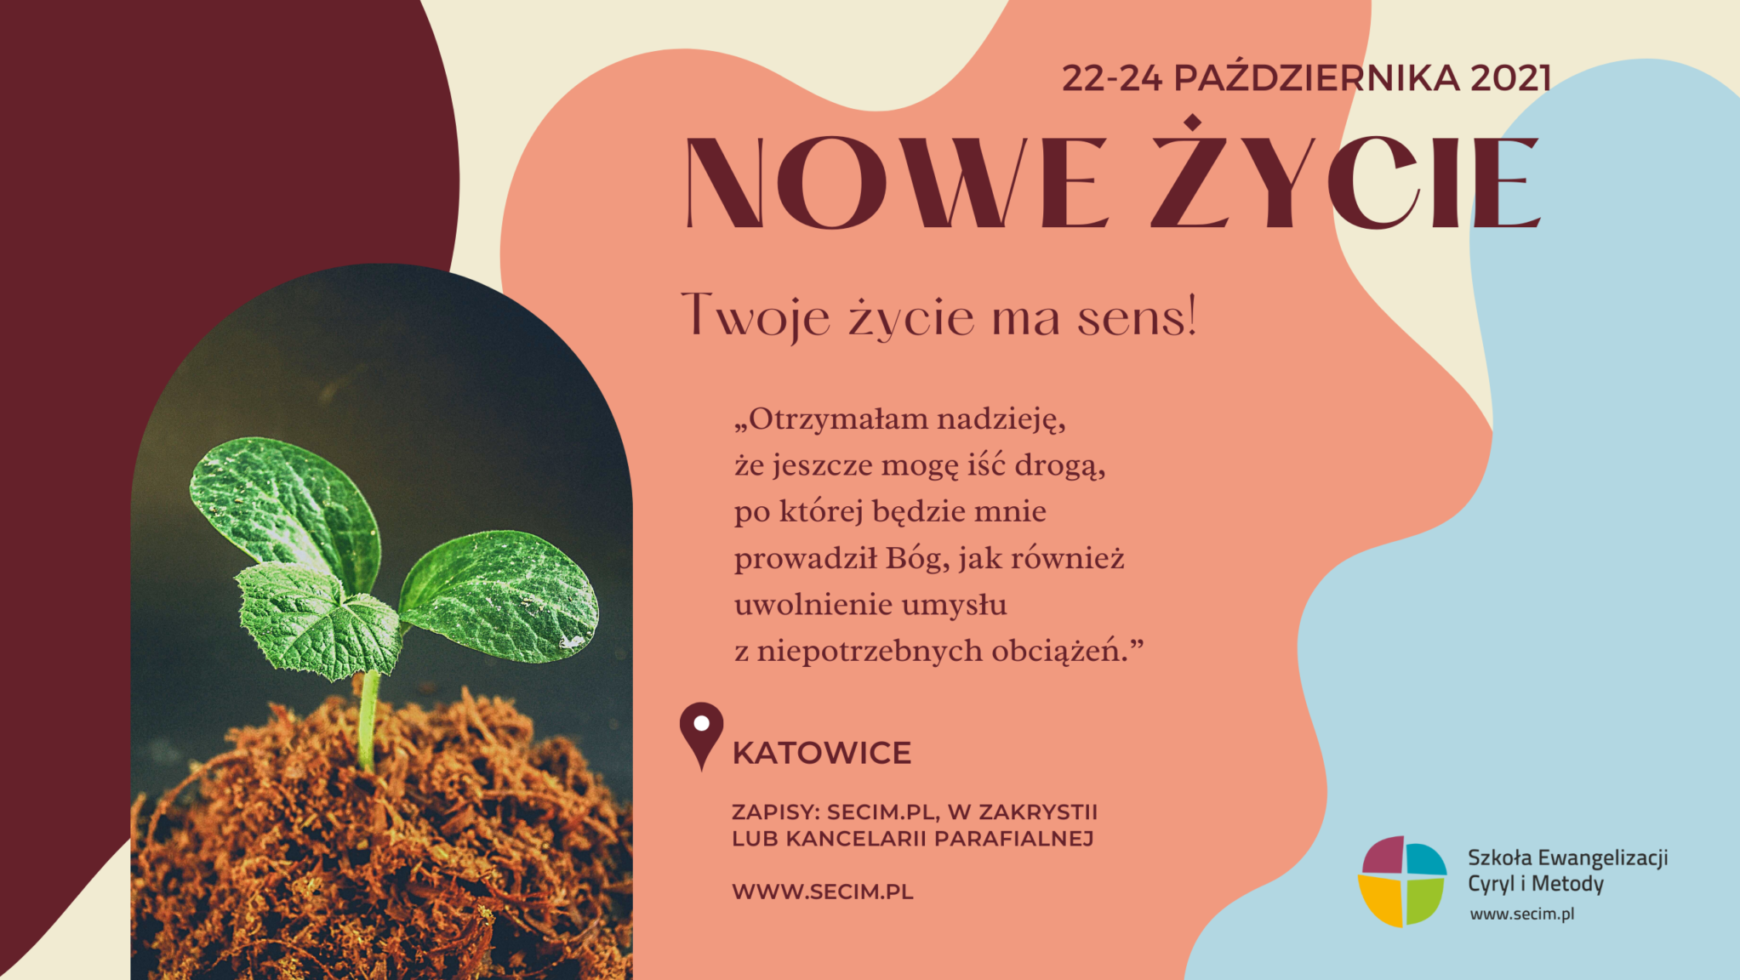 Kurs Nowe Życie, Bielsko-Biała